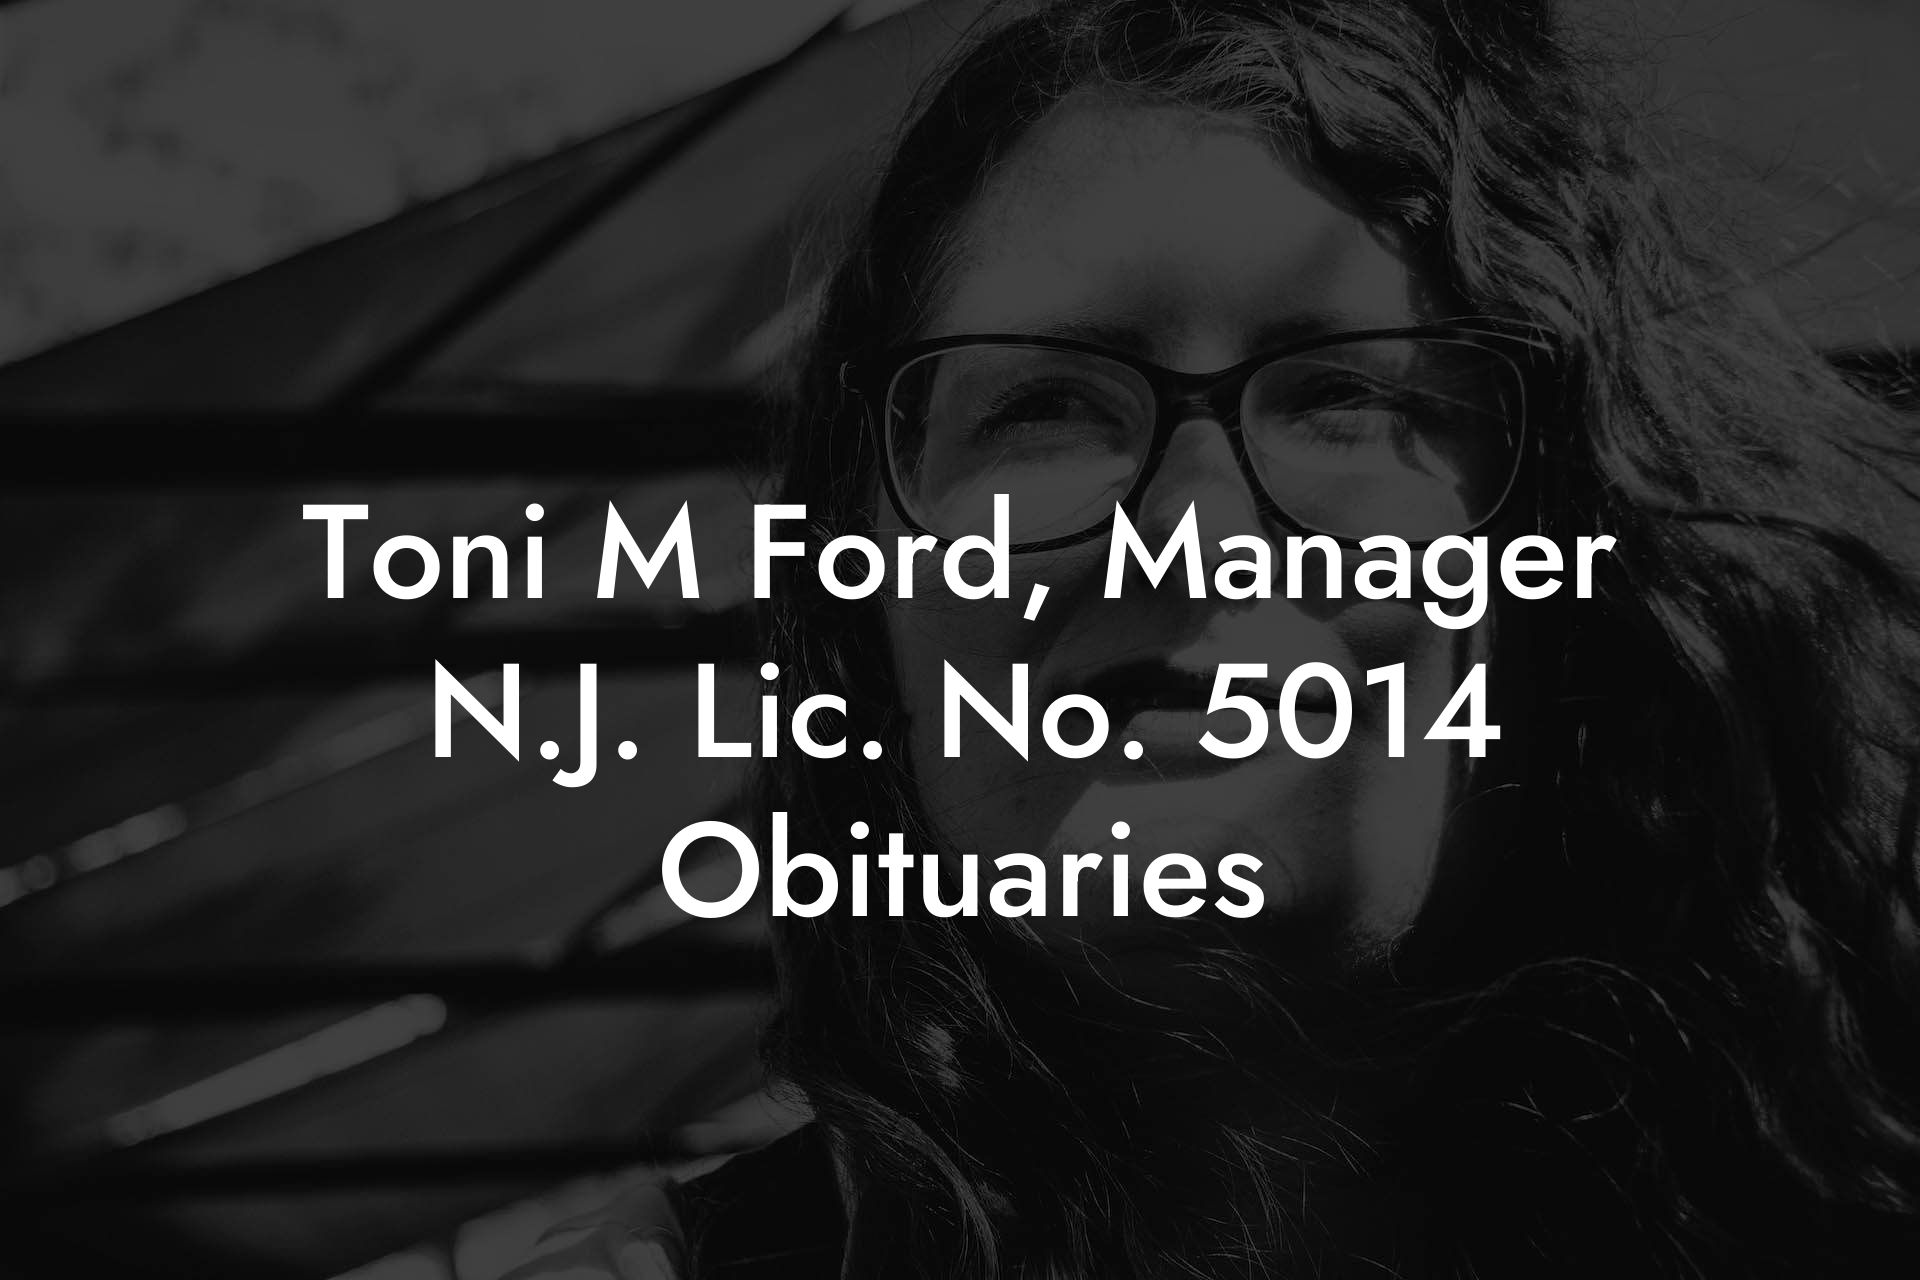 Toni M Ford, Manager N.J. Lic. No. 5014 Obituaries